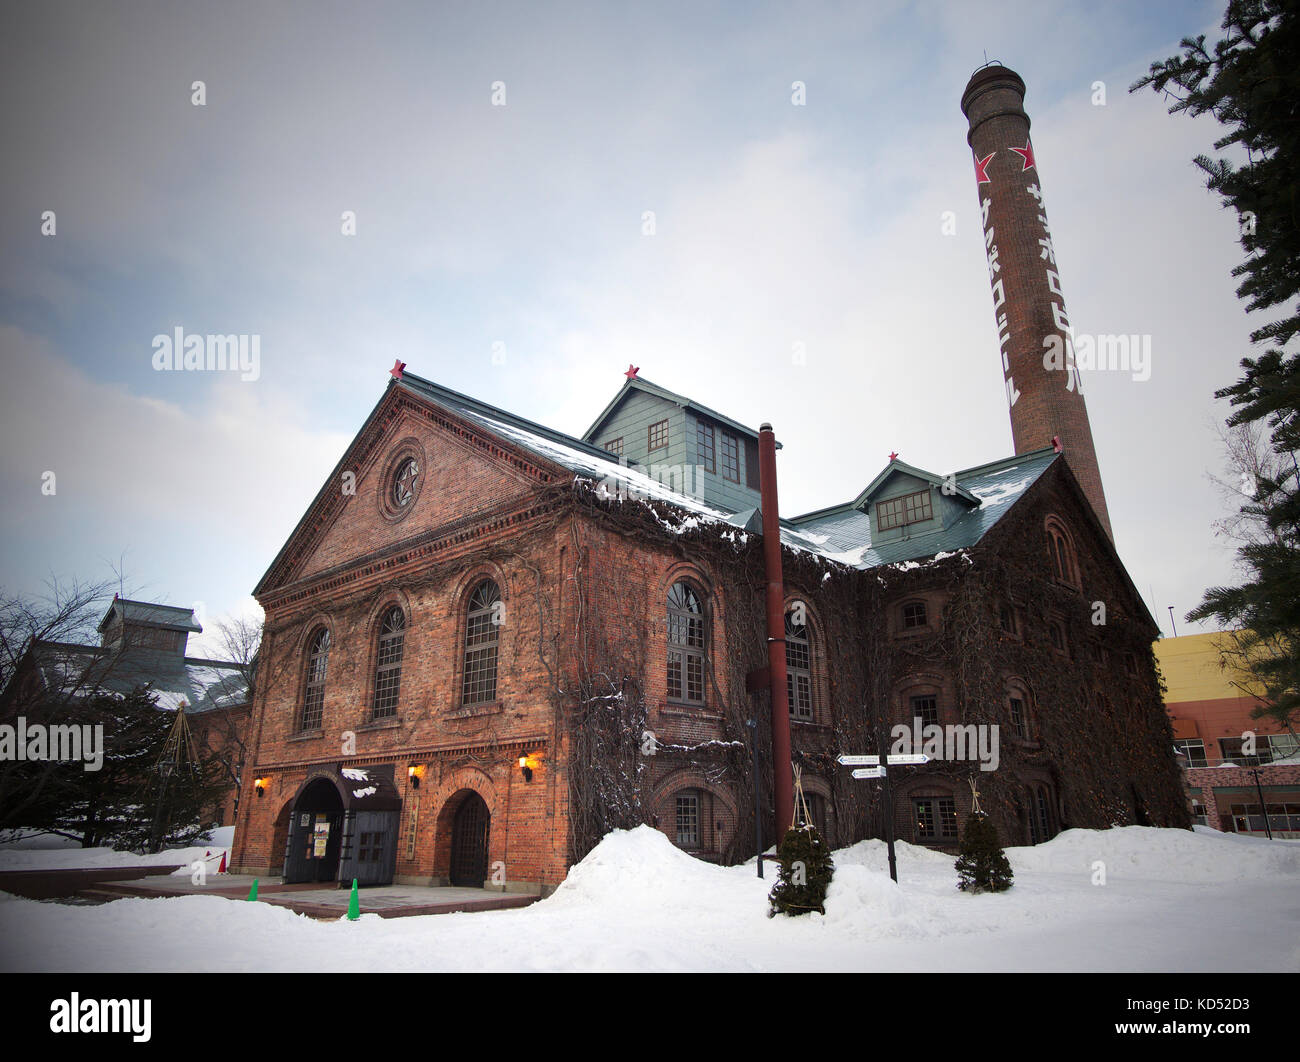 Museo della birra Sapporo al Parco Giardino Sapporo, Hokkaido, Giappone, in inverno Foto Stock